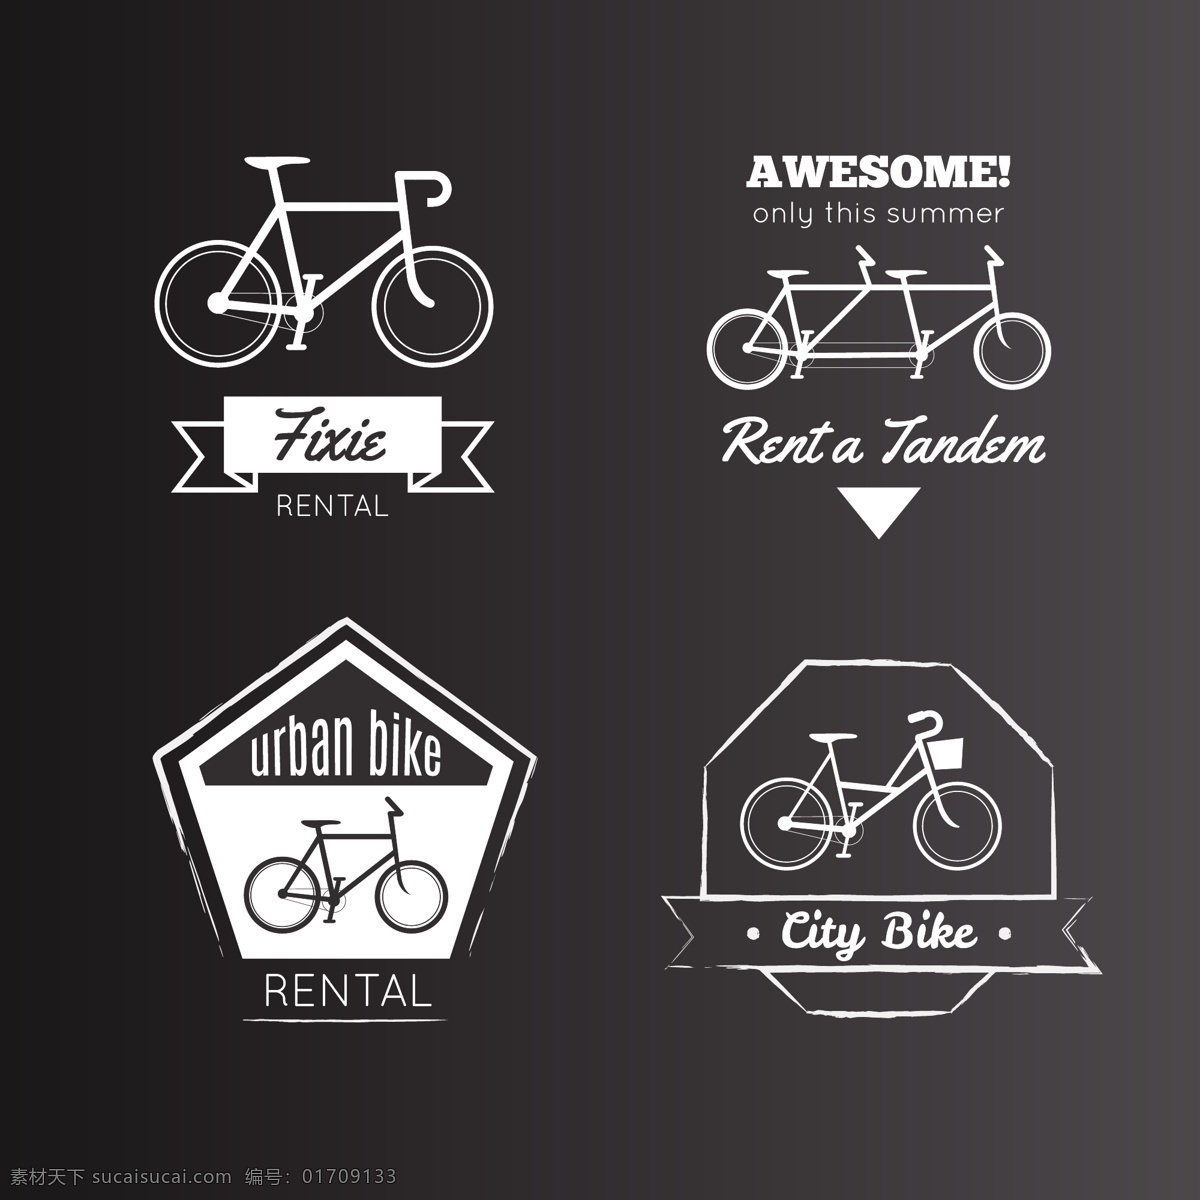 自行车图标 小图标 小标志 图标 logo 标志 vi icon 标识 图标设计 logo设计 标志设计 自行车 单车 交通工具 车辆 山地车 赛车 bike 手绘自行车 卡通自行车 手绘 自行车素材 骑行队 自行车俱乐部 图标图表